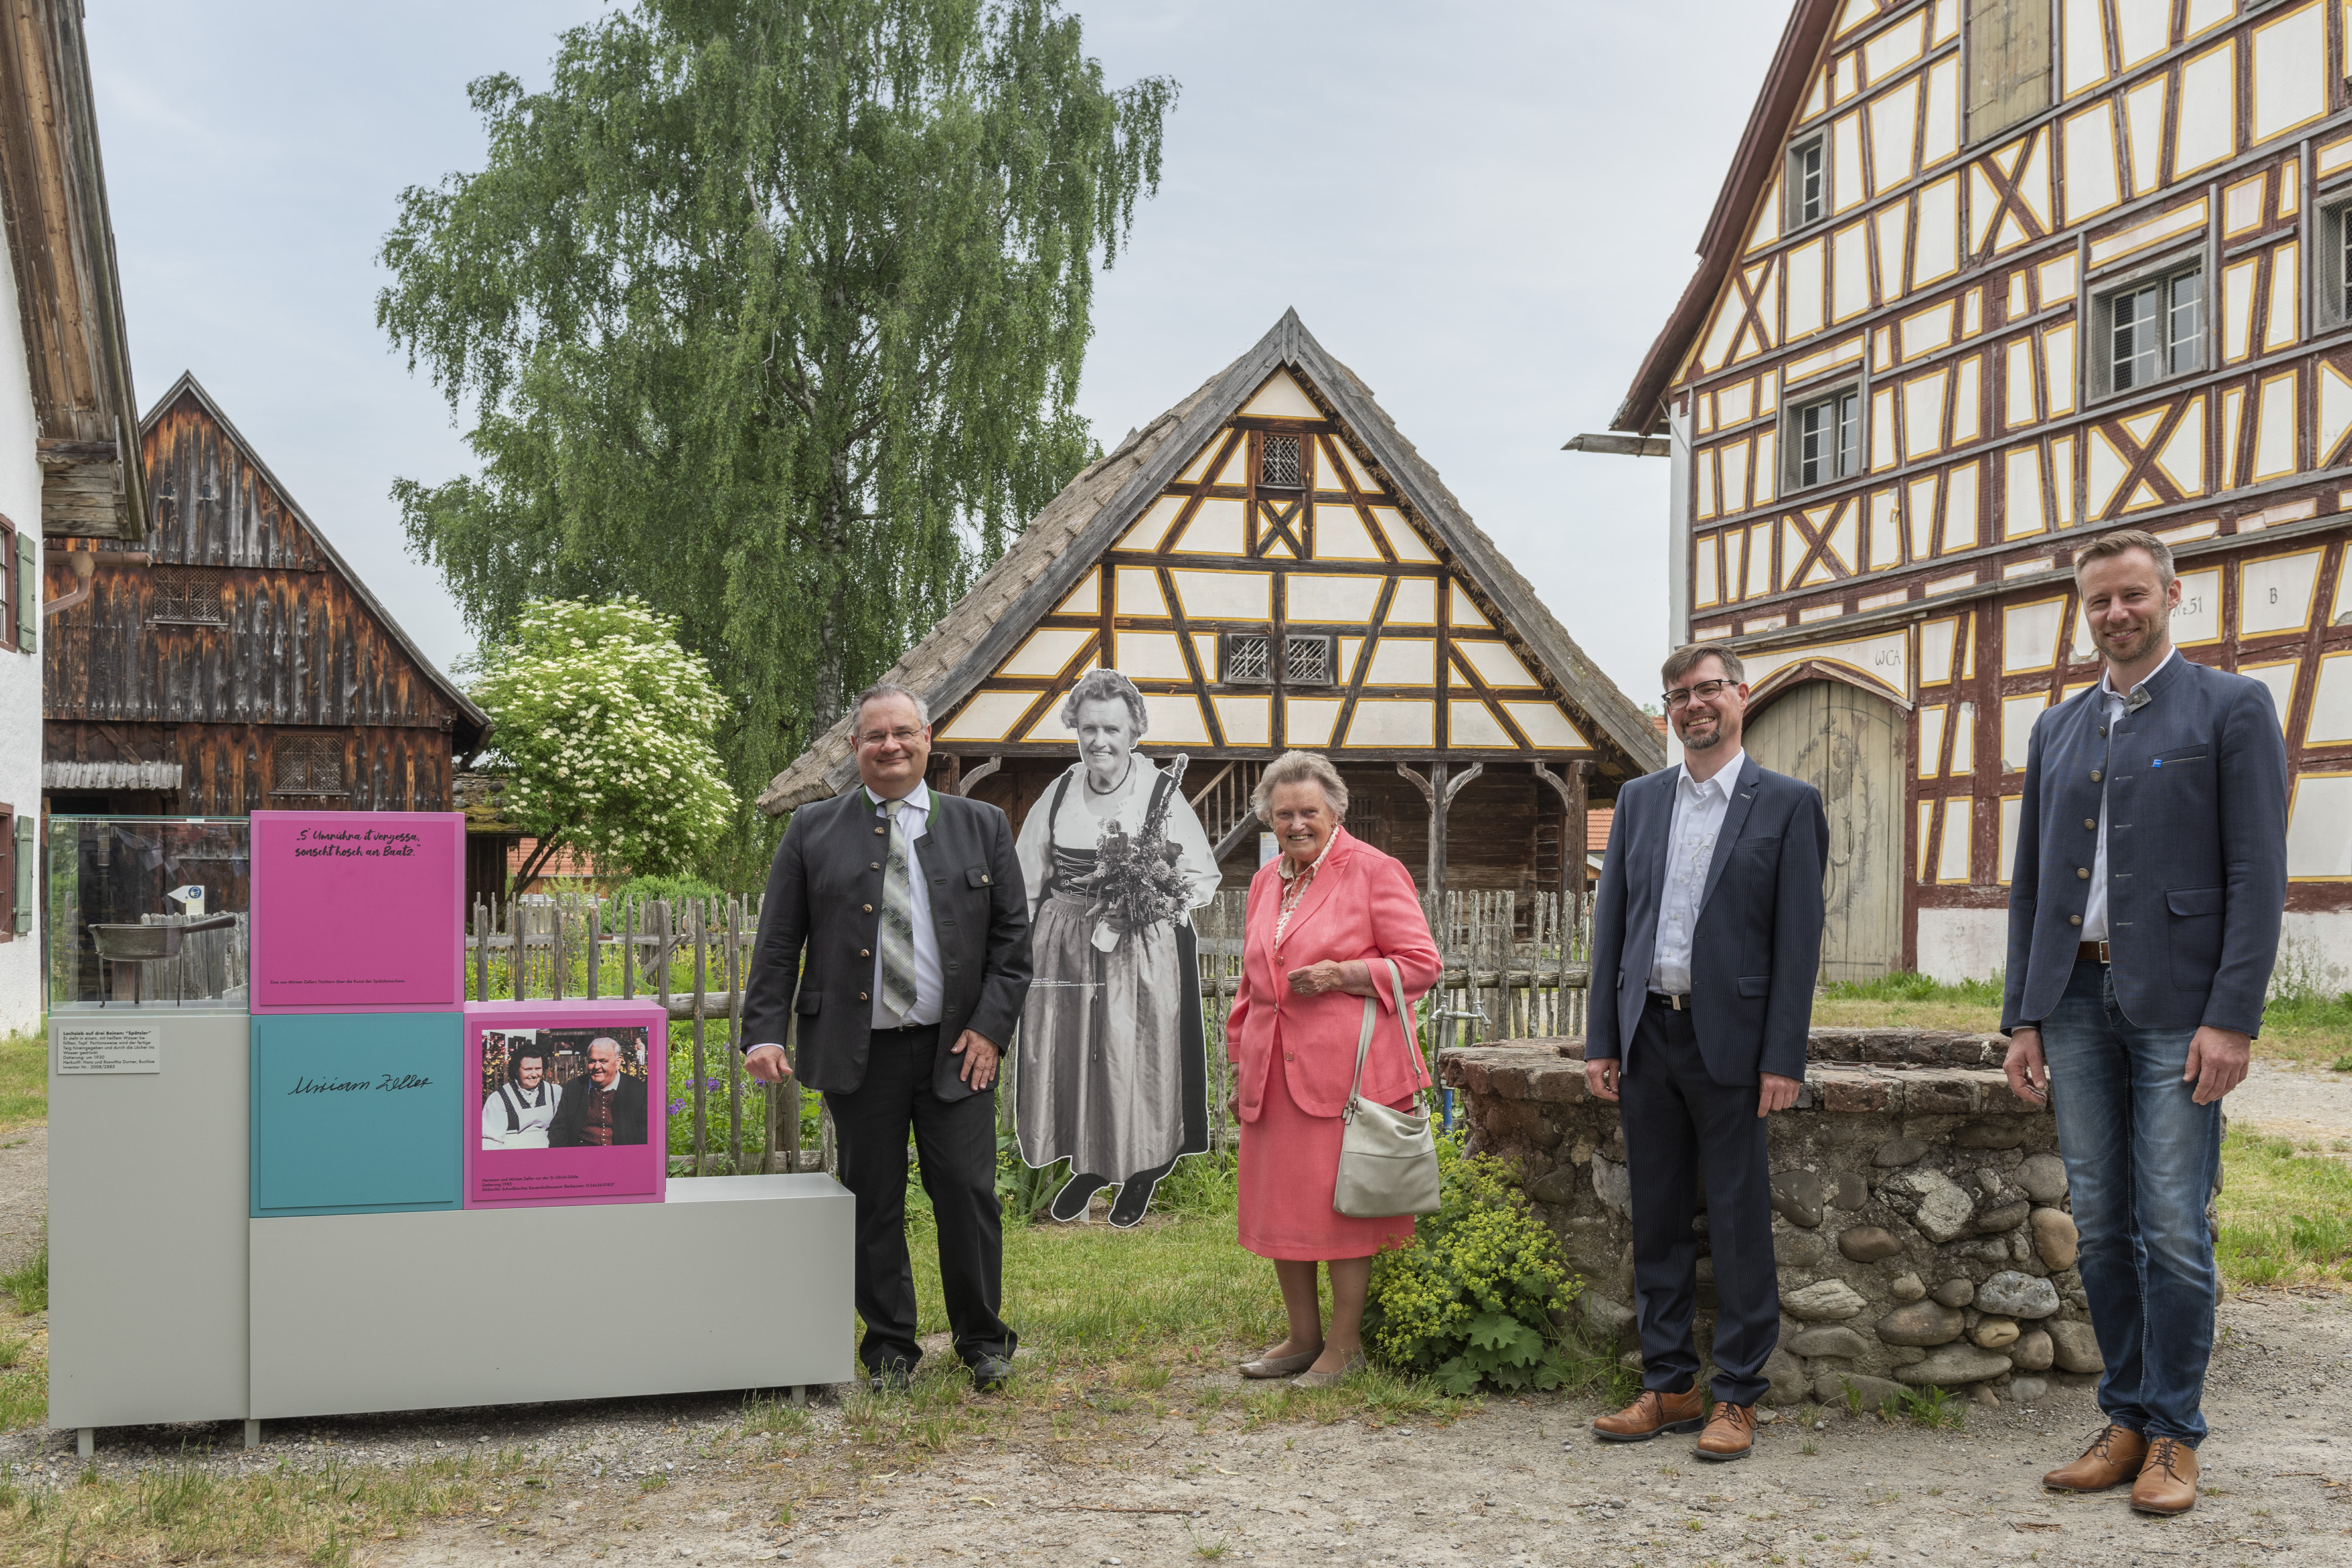 Laufend FrauenGestalten begegnen - Neue Sonderausstellung im Schwäbischen Bauernhofmuseum Illerbeuren bietet umfangreiches Rahmenprogramm